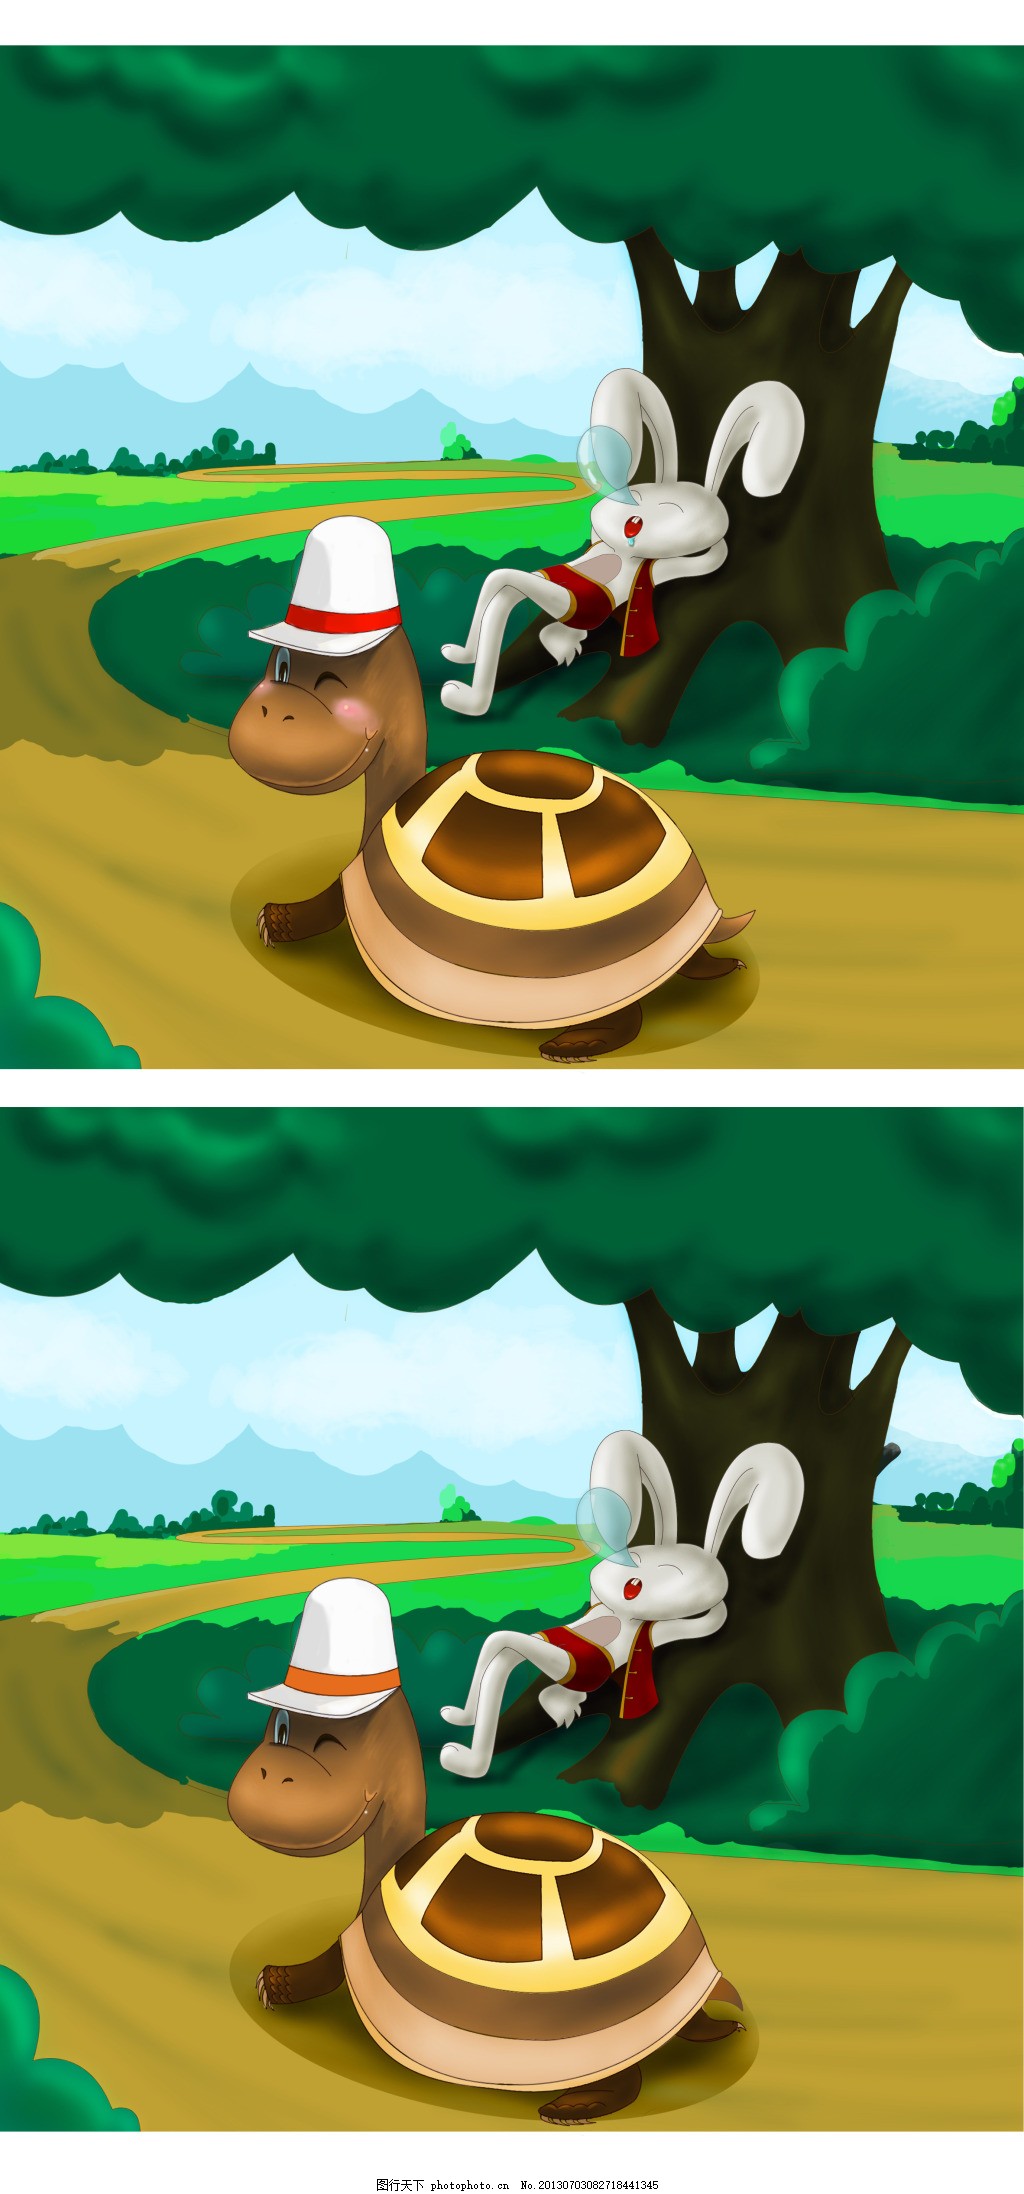 迷你世界：找兔子-小米游戏中心